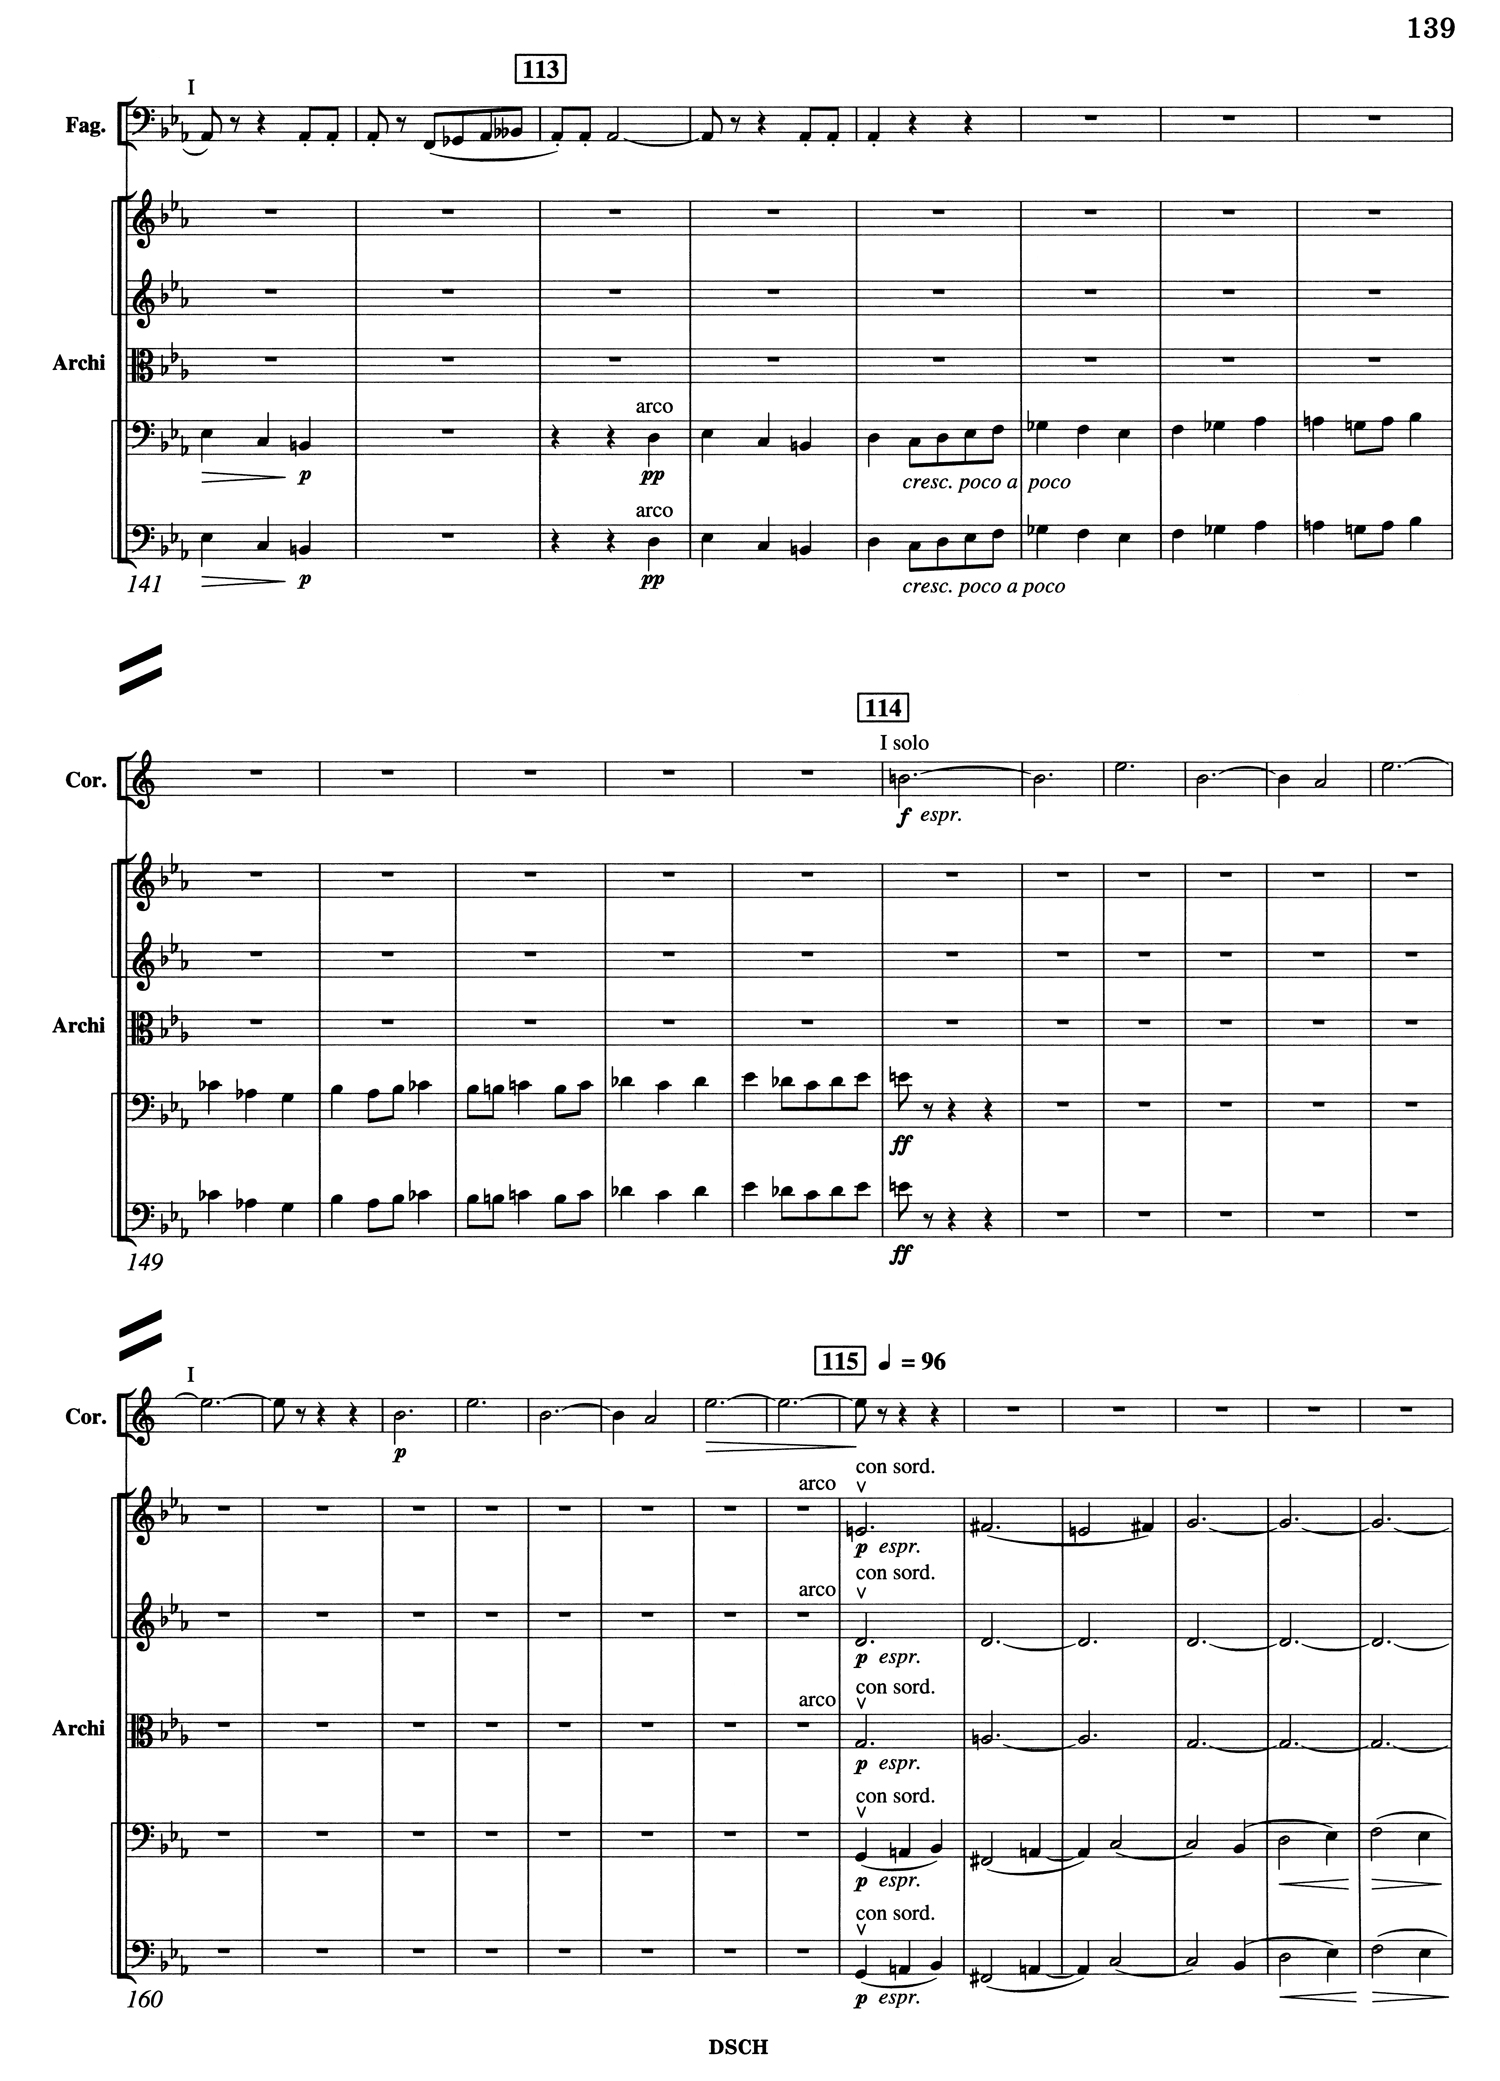 Shostakovich_10_Mvt_3_Score_3.jpg